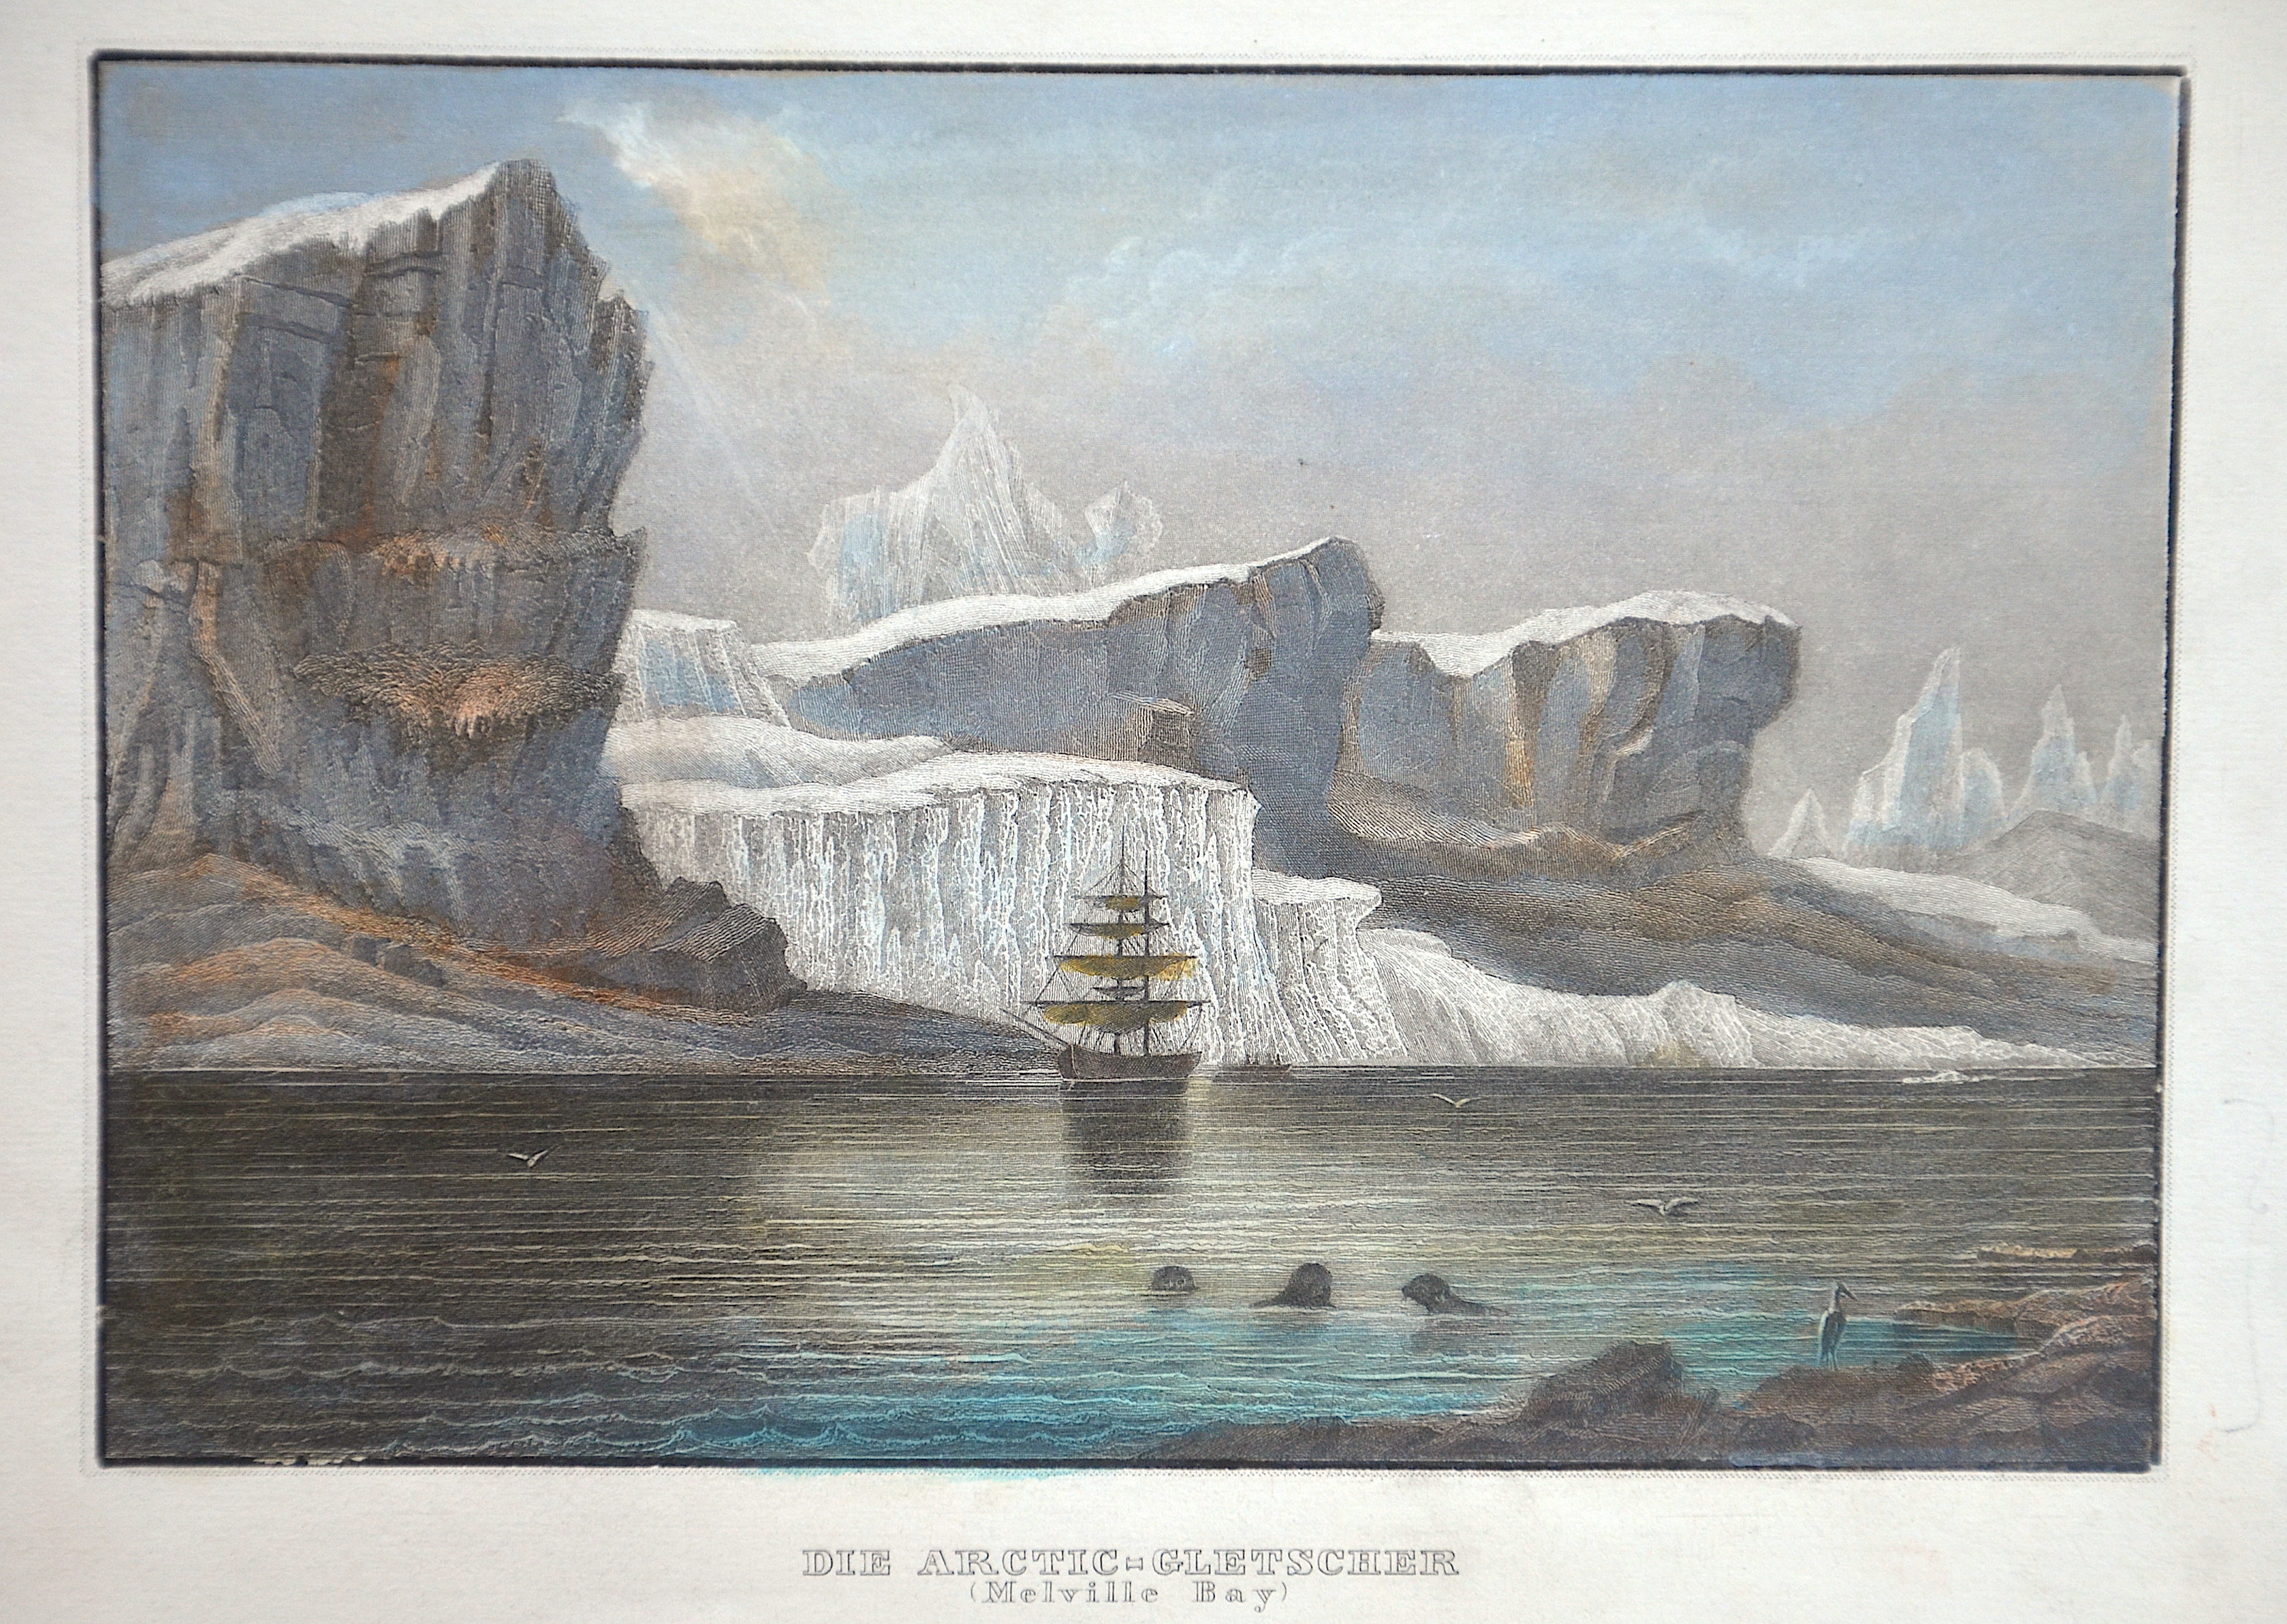 Kunstanstalt Hildburghausen  Die Arctic-Gletscher (Melville Bay)